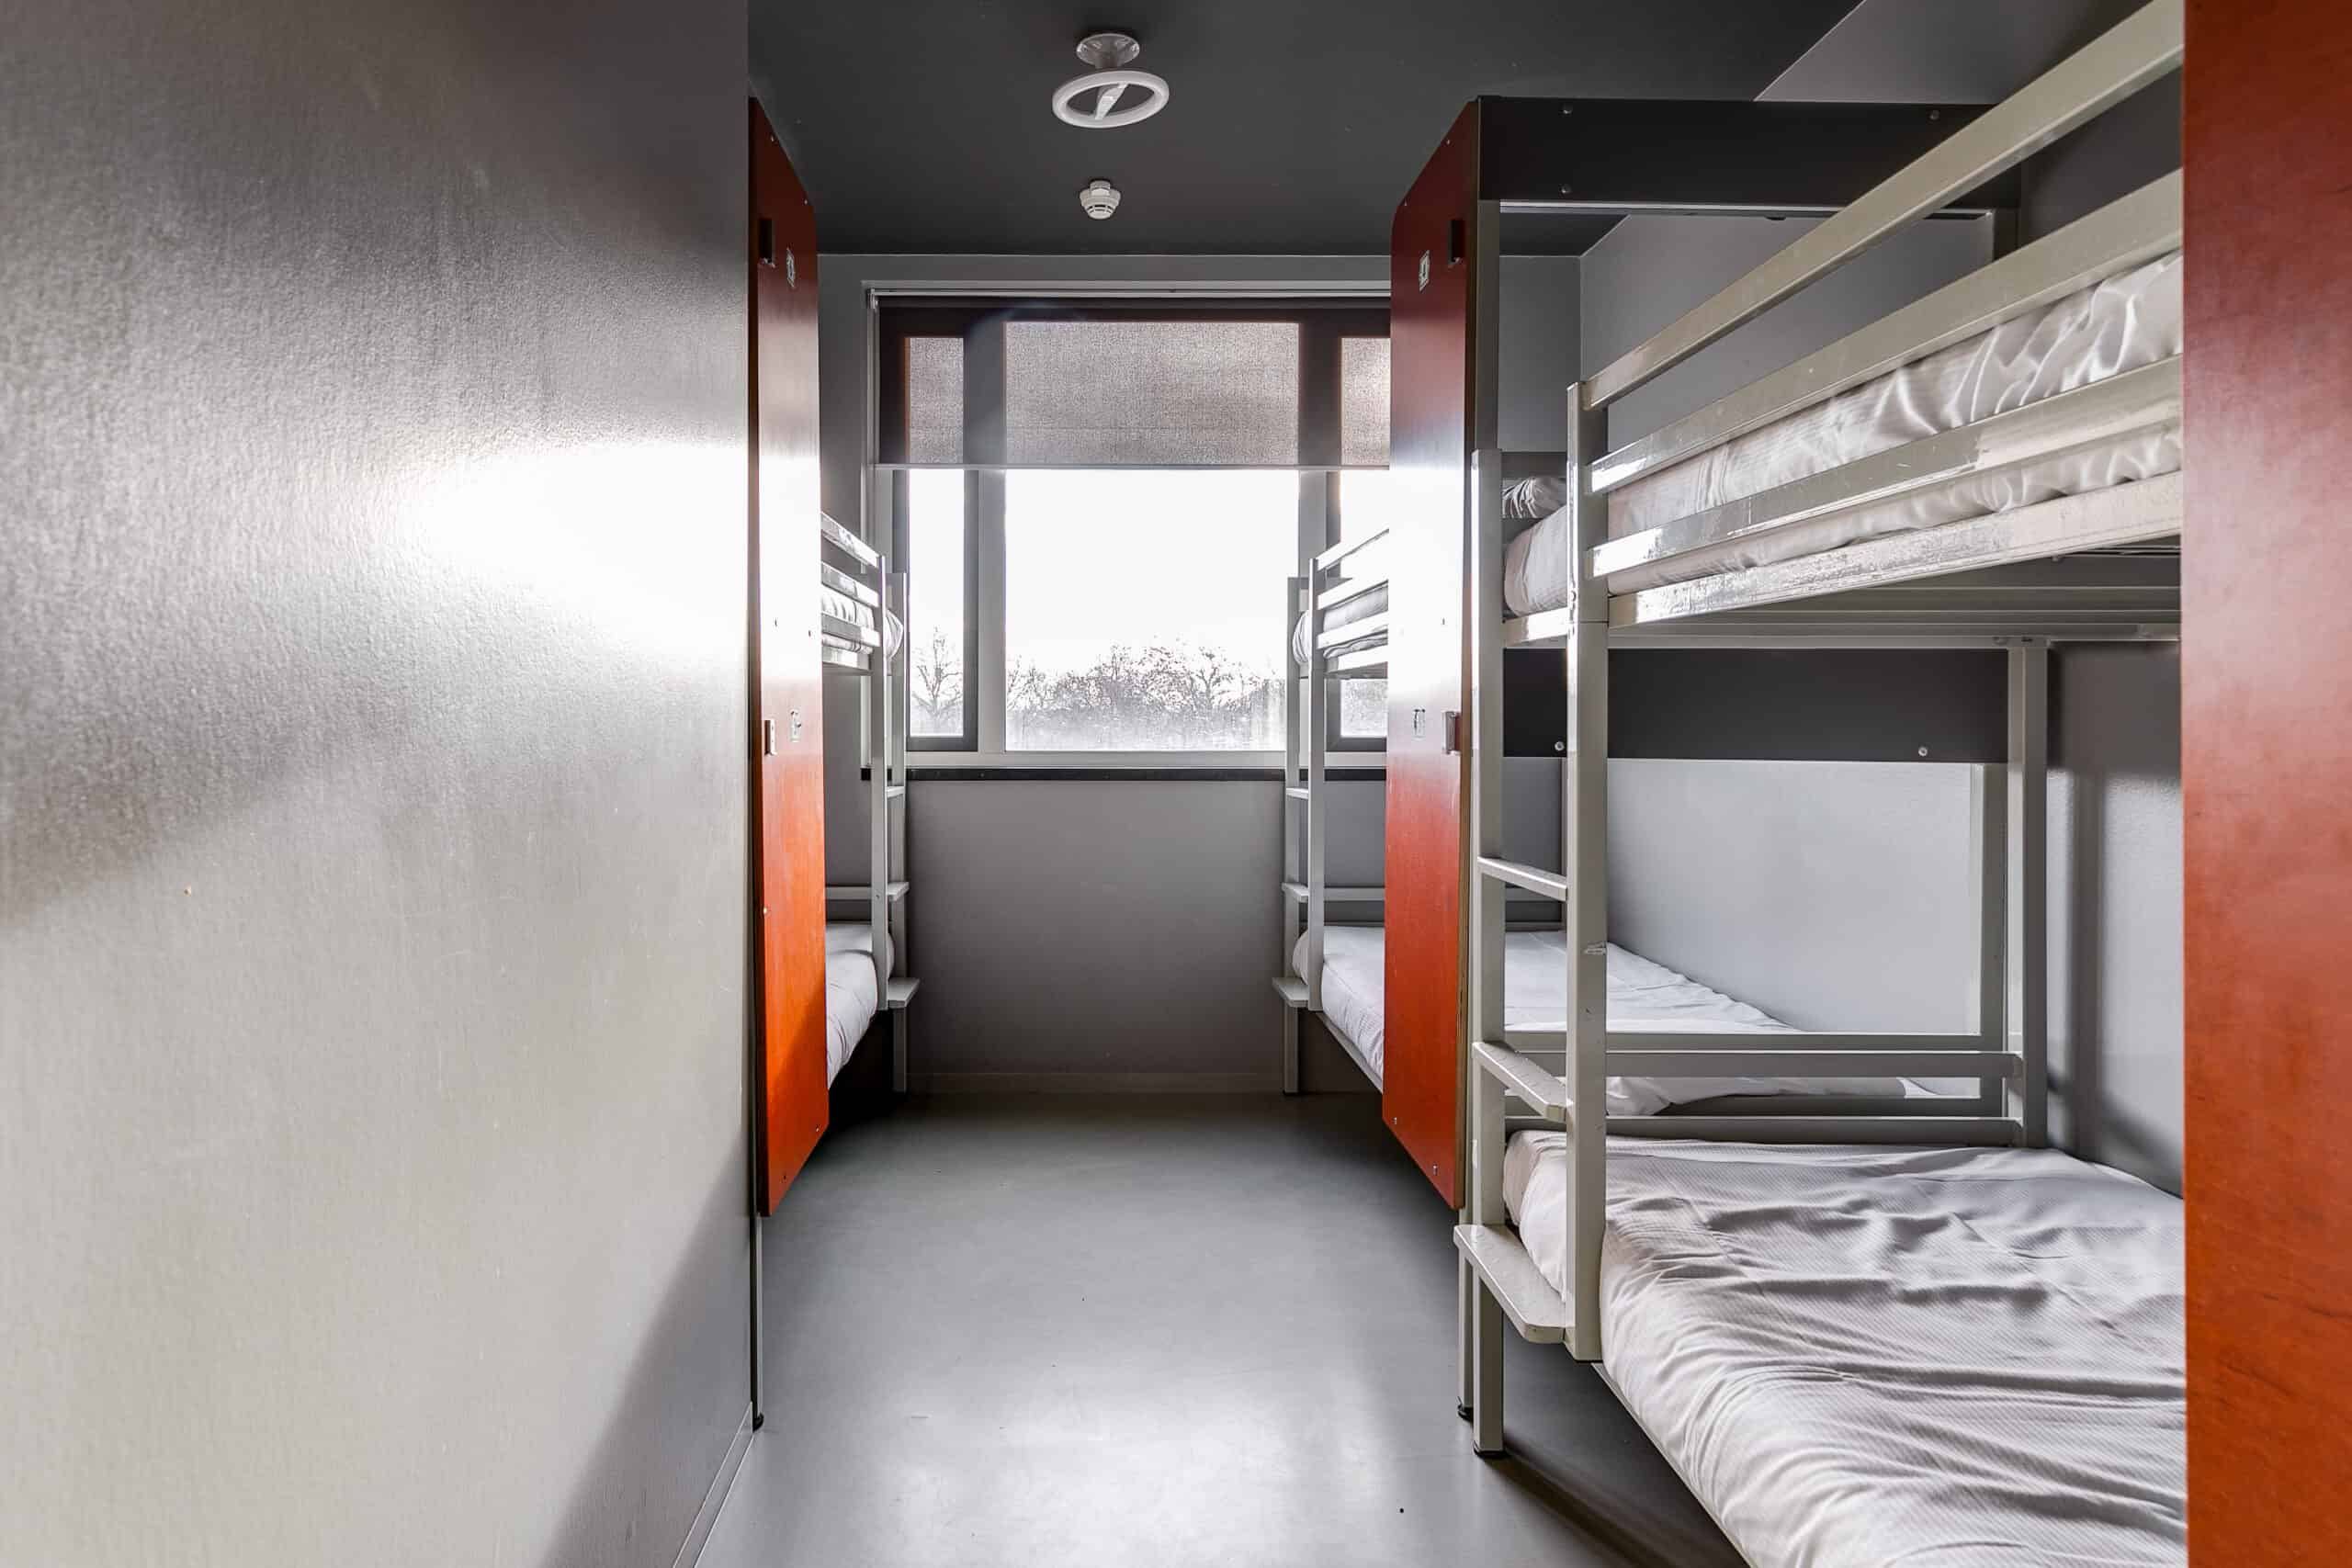 Schlafsaal mit Etagenbetten und Spinden in der Jugendherberge Clinknoord Amsterdam